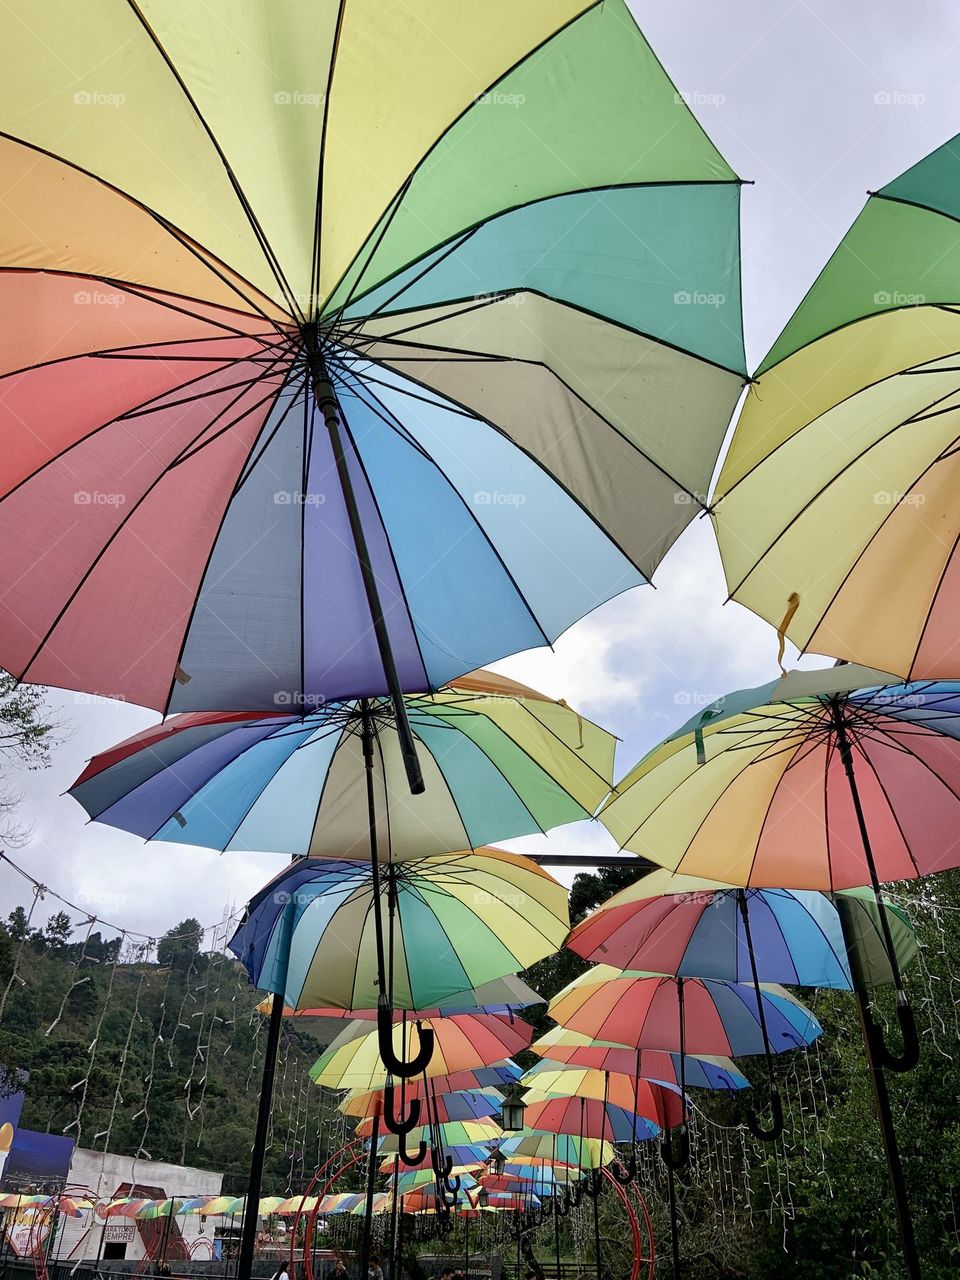 Multicolor umbrella in the sky 